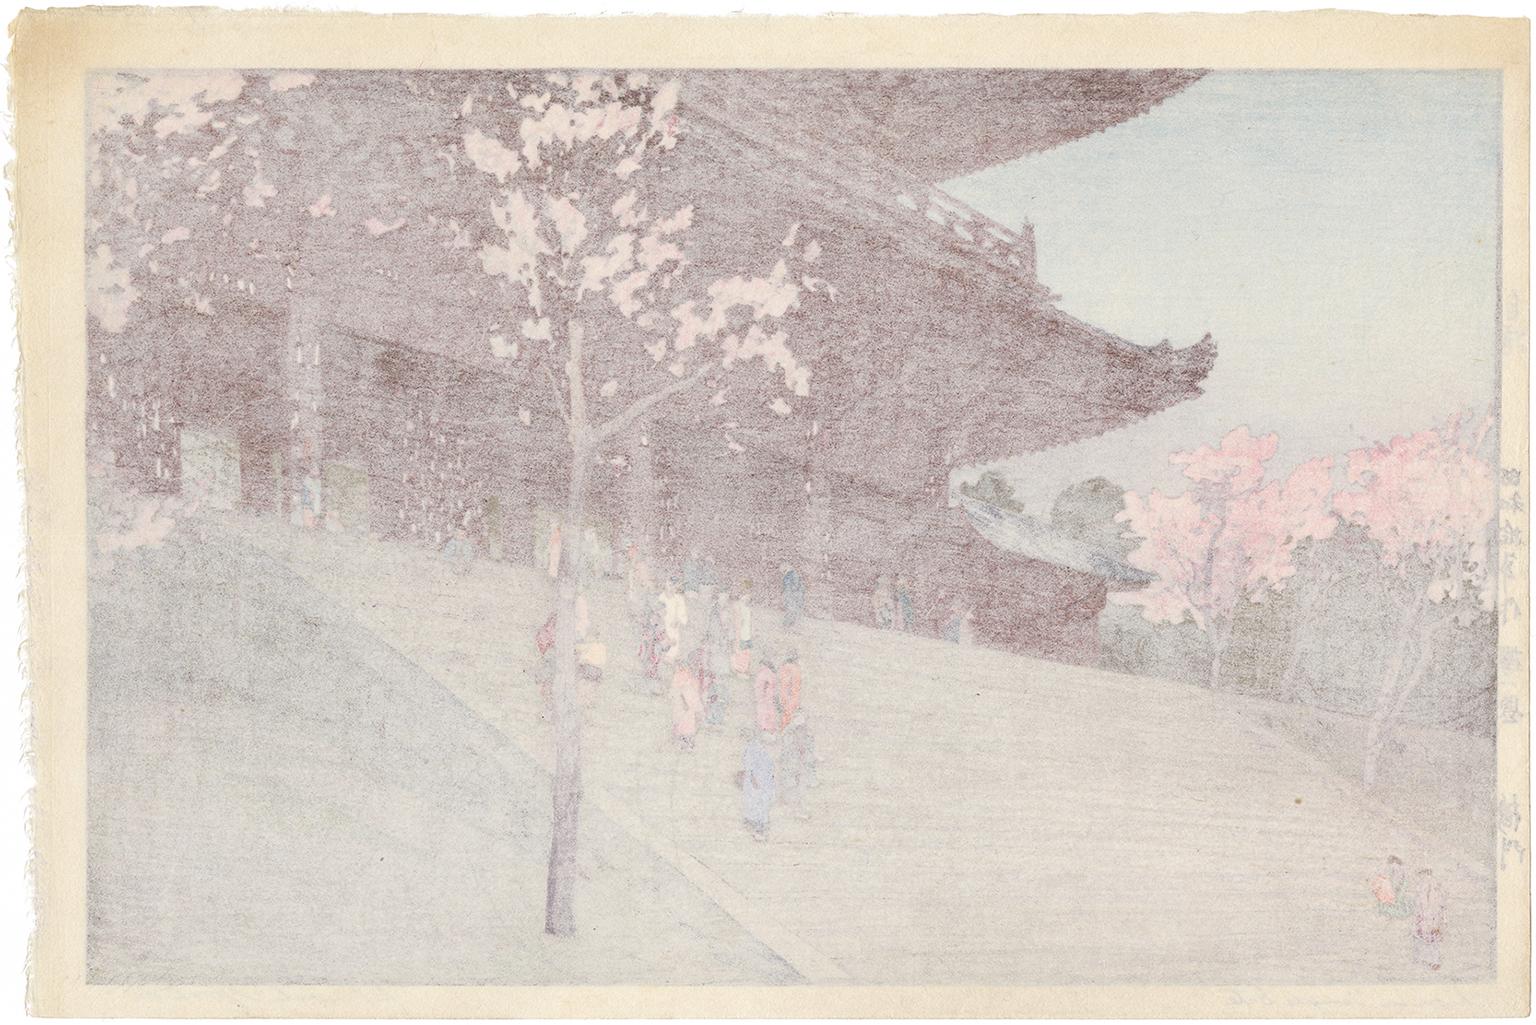  Porte du temple de Chion-in, tirée de Huit scènes de fleurs de cerisier - Sceau de Jizuri - Print de Hiroshi Yoshida